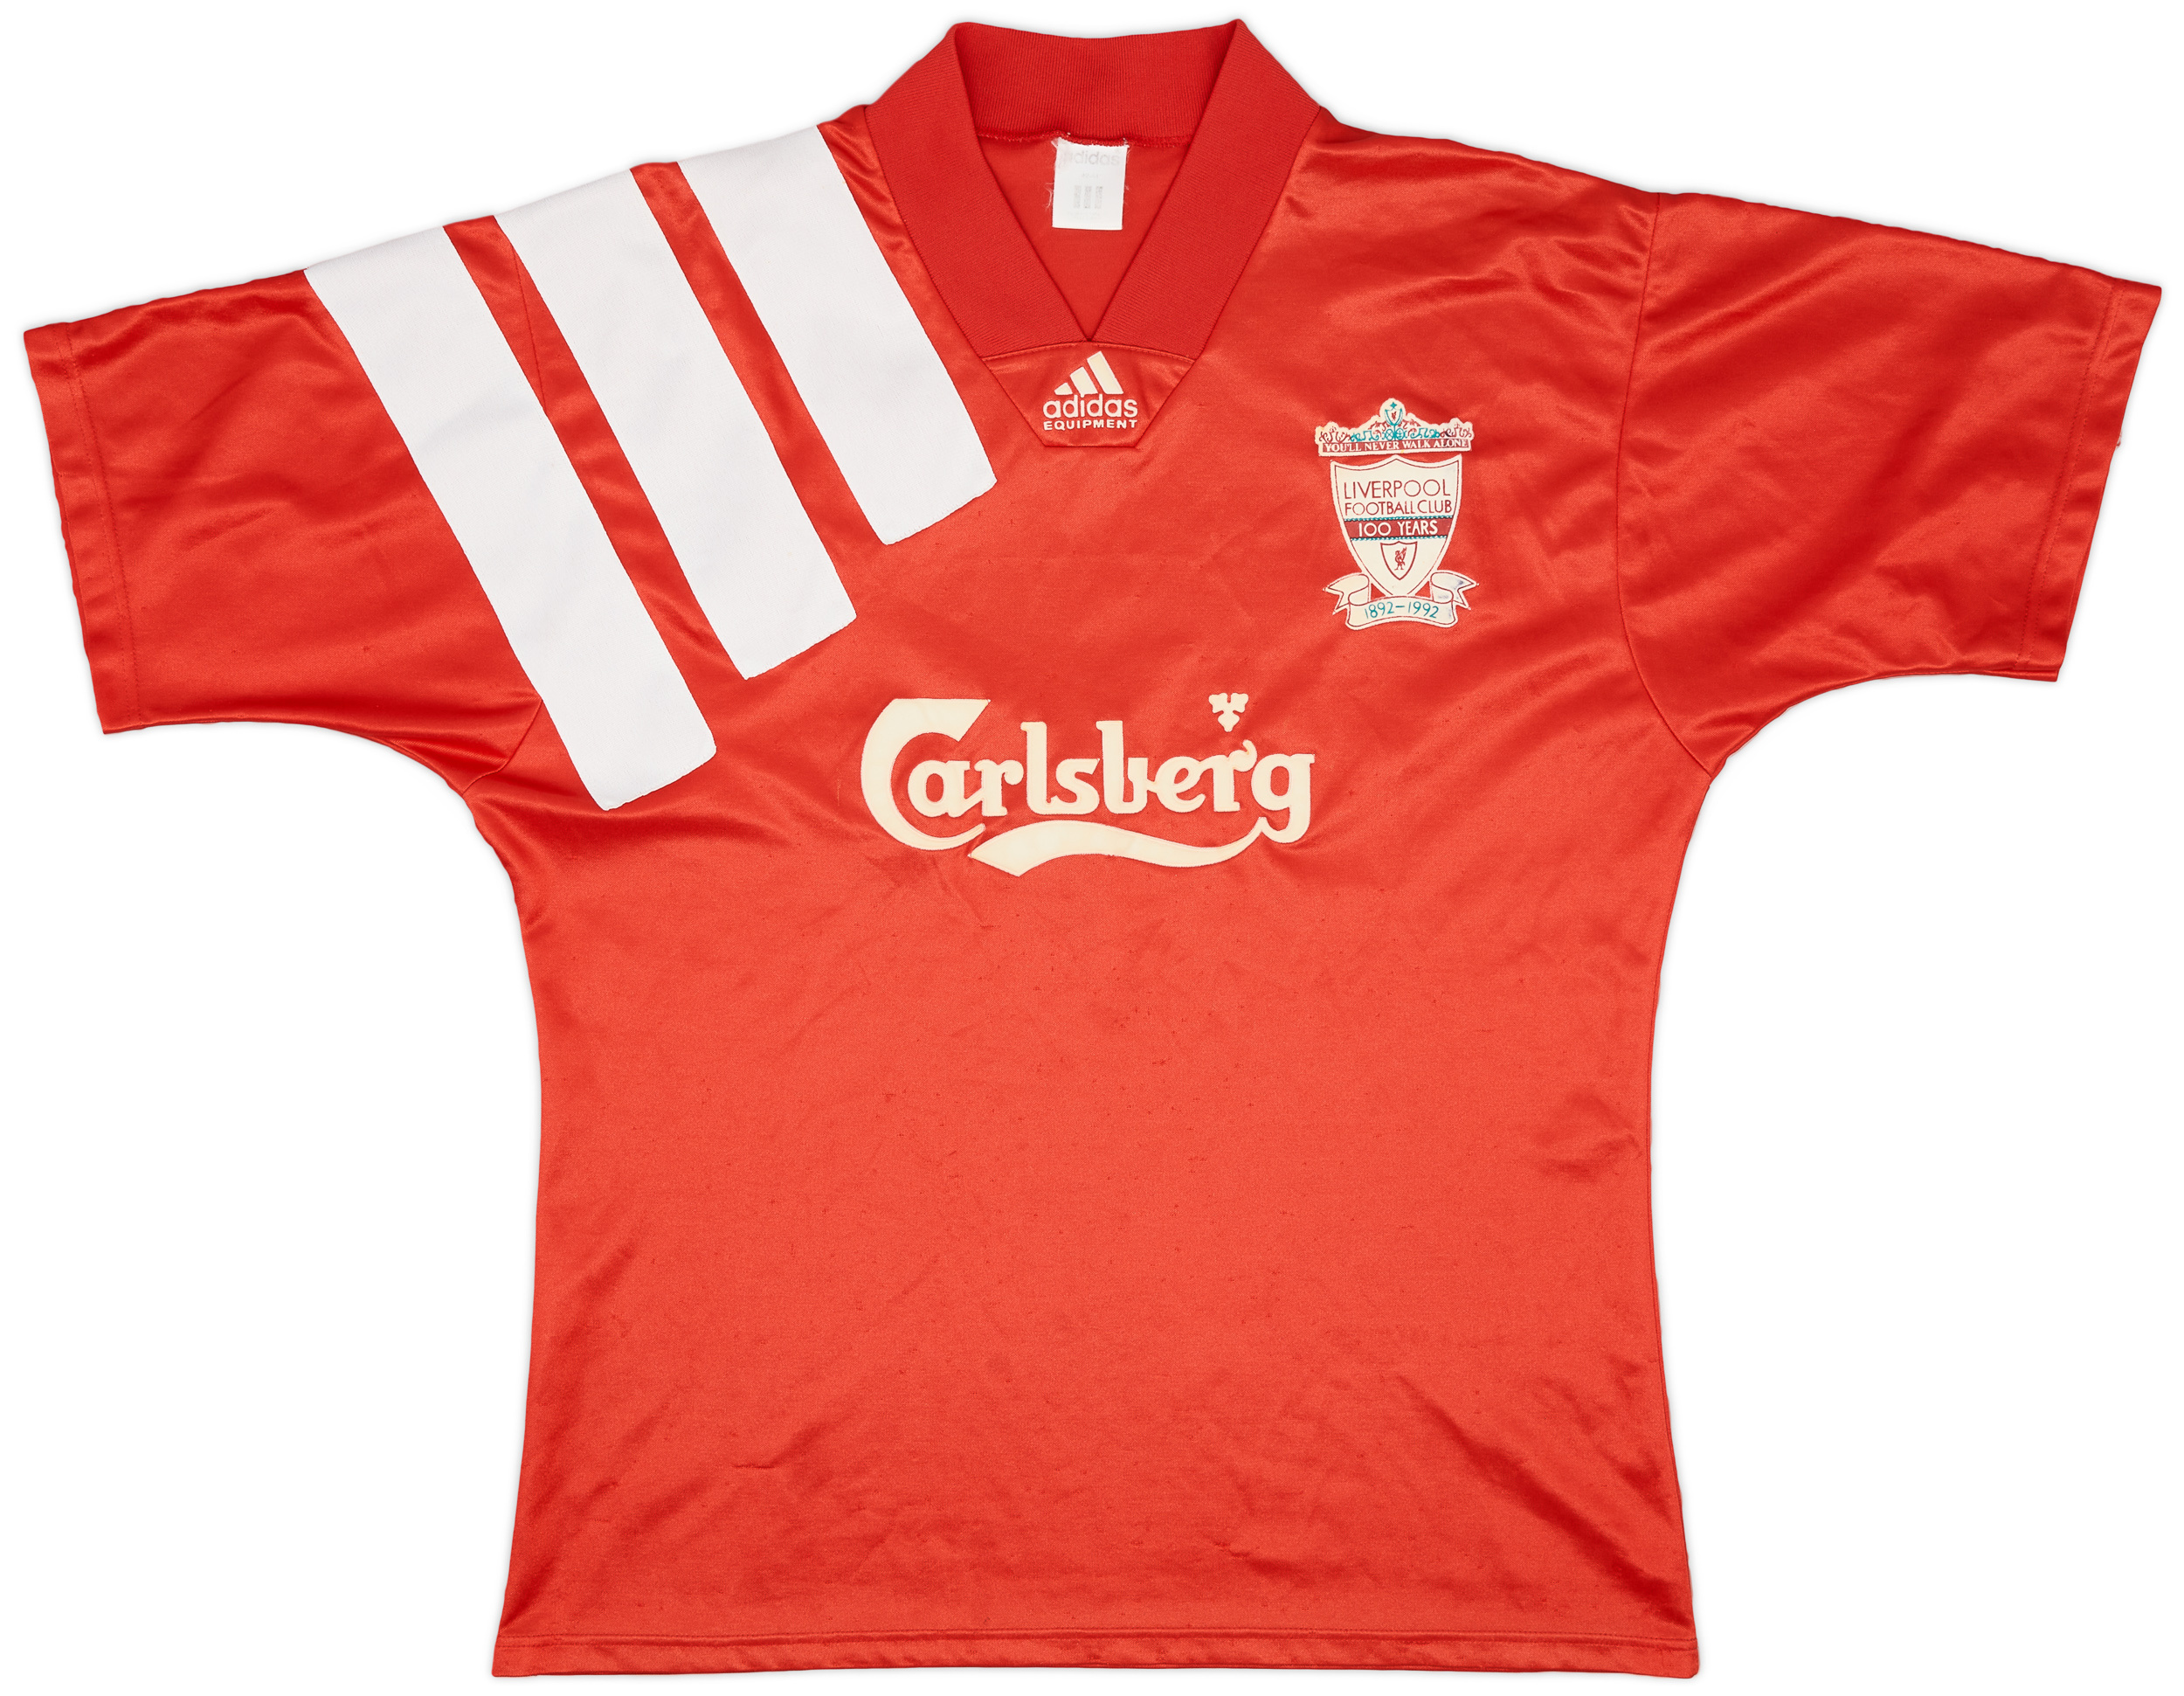 1992-93 Liverpool Centenary Home Shirt - 7/10 - ()